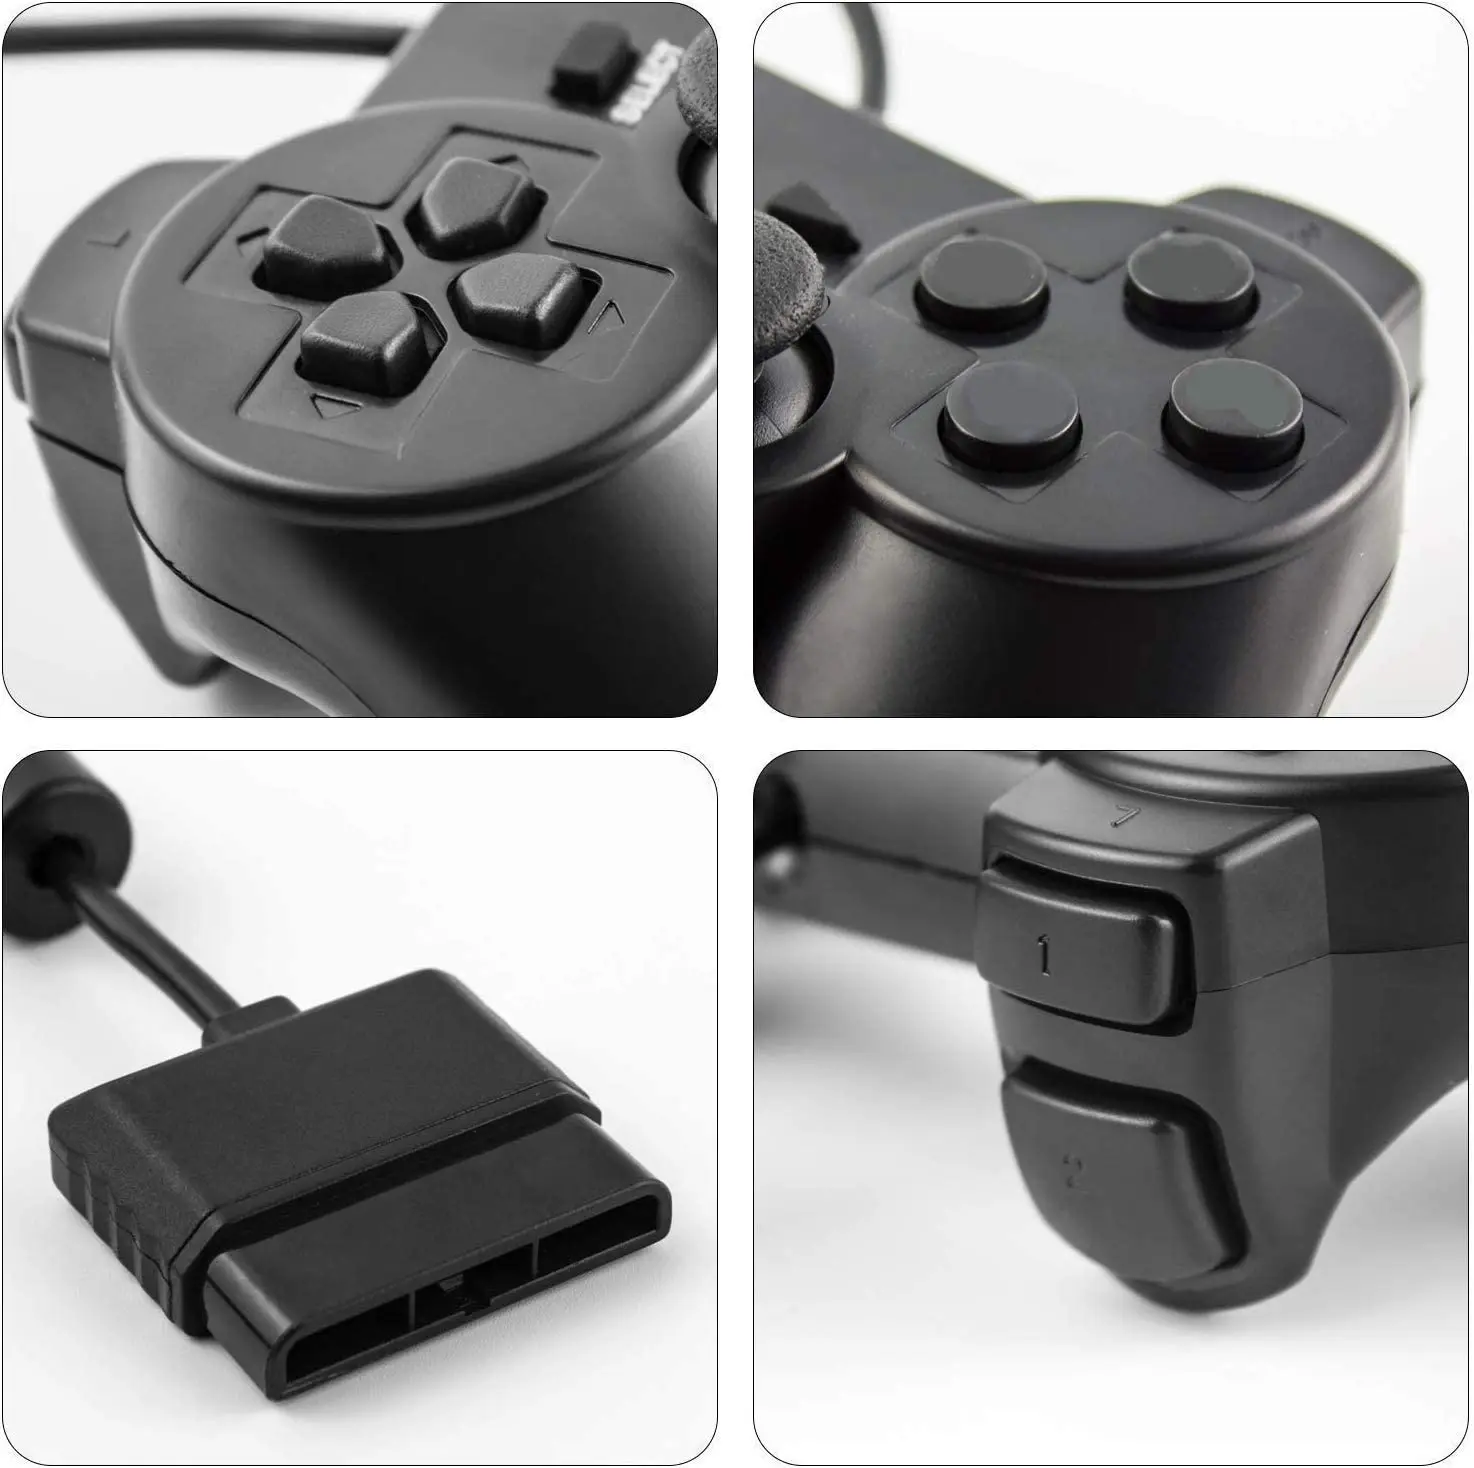 Vadu Kontrolieris Gamepad Sony Playstation 2 PS2 Konsole Spēli Kursorsviru PS2 Dual Šoks Vibrācijas Dual Šoks Vadu Controle